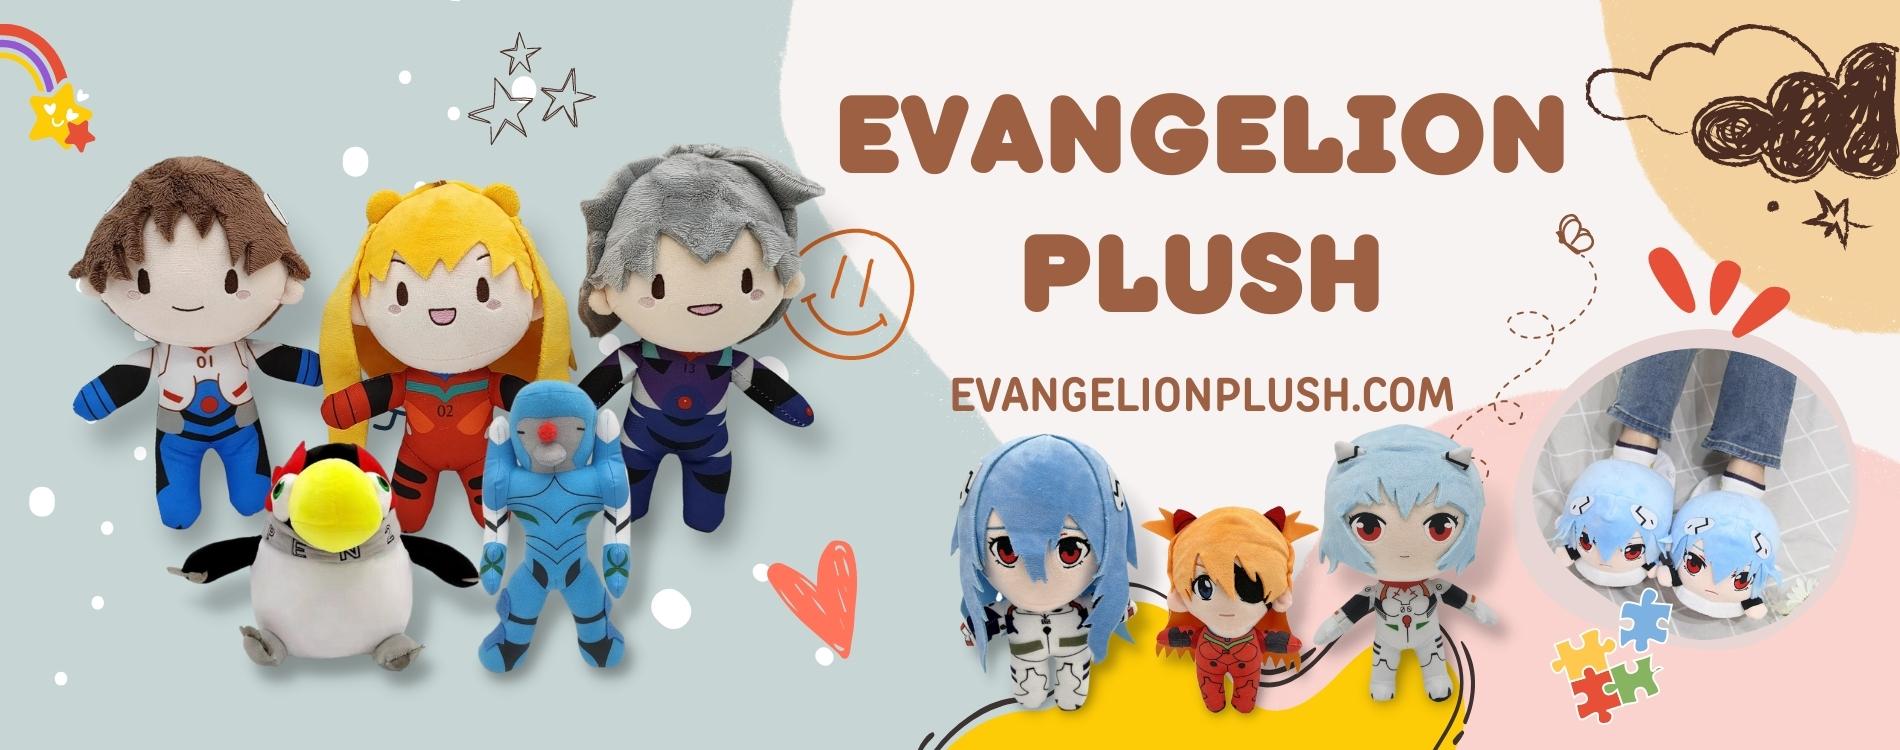 Evangelion Plush banner